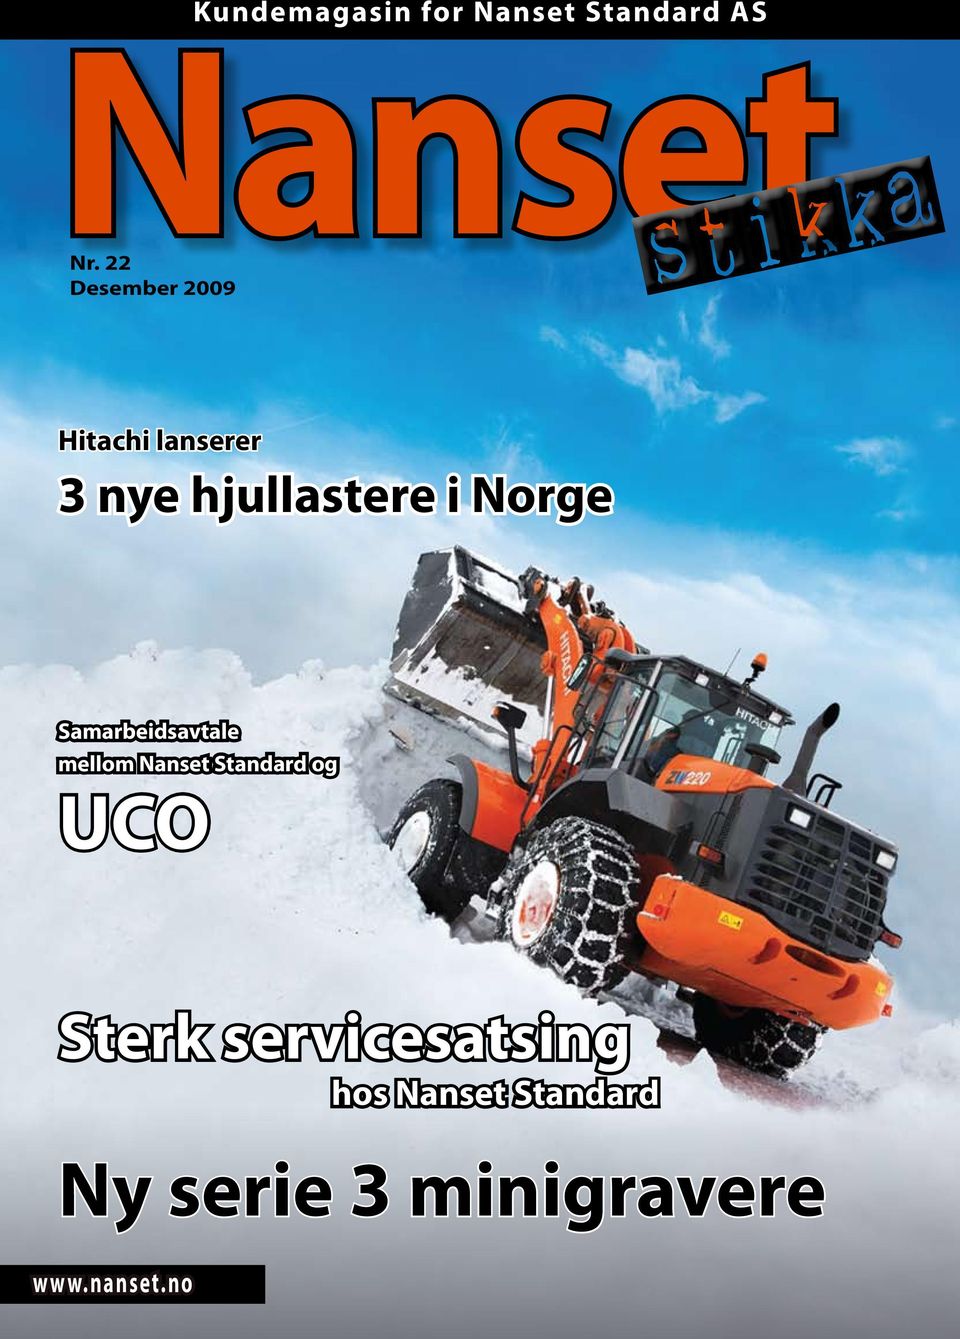 Norge Samarbeidsavtale mellom Nanset Standard og UCO